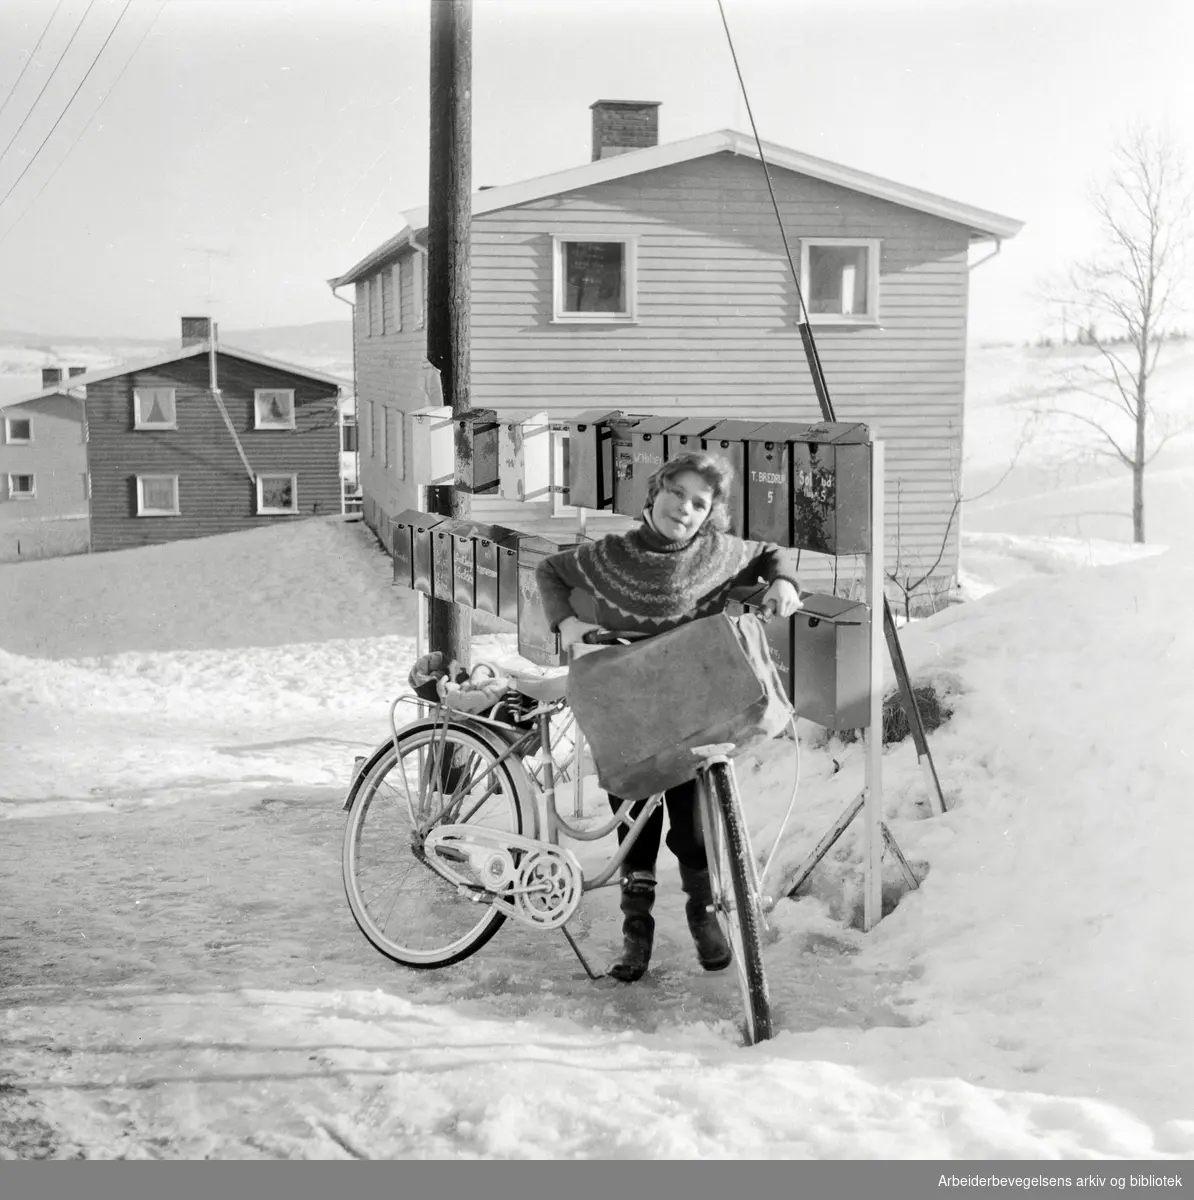 Avisbud i et nytt boligområde på Rælingen. Mars 1961